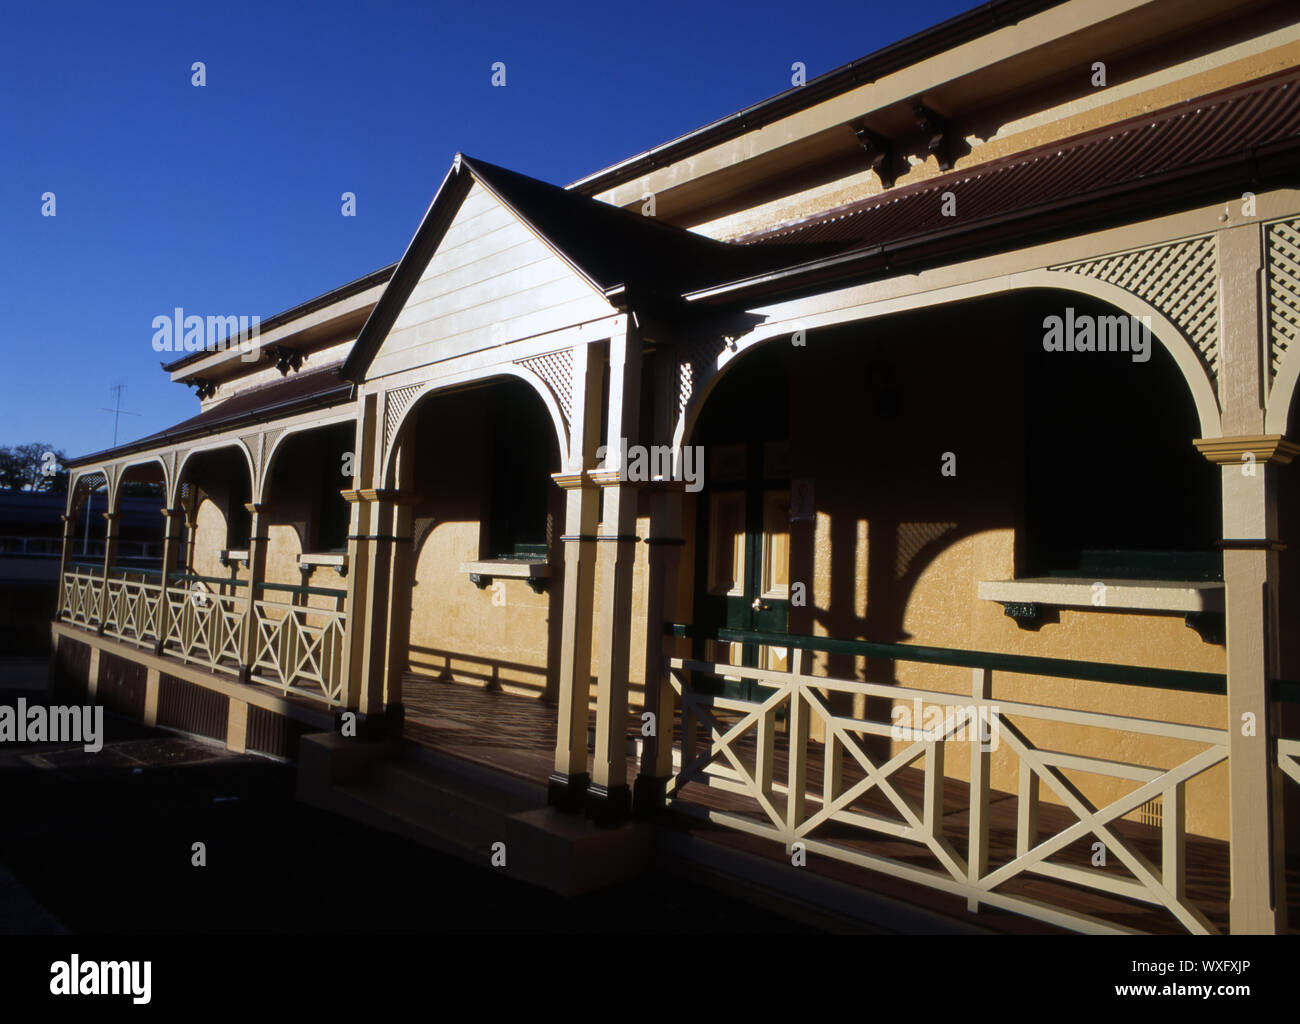 AUSTRALIAN QUEENSLANDER HOME, GYMPIE, QUEENSLAND, AUSTRALIA. Stock Photo